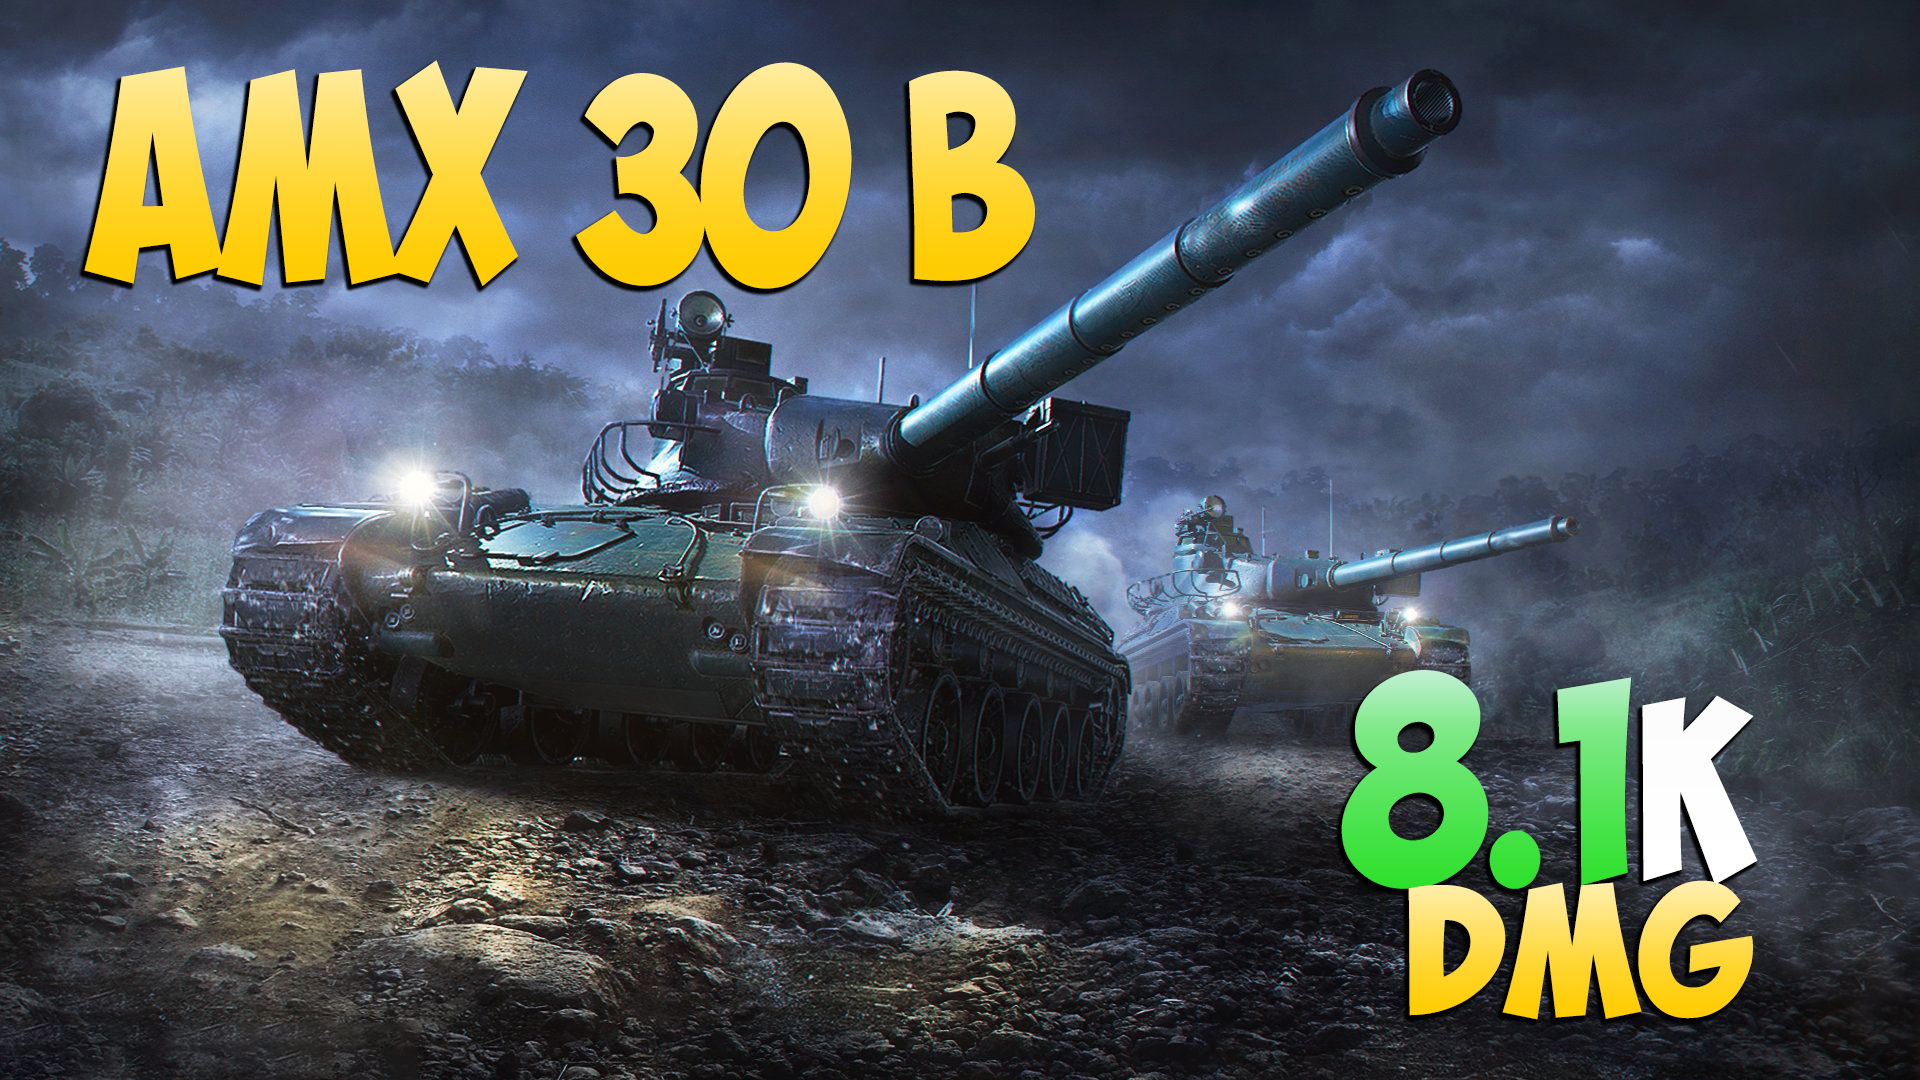 AMX 30 B - 4 Фрагов 8.1K Урона - Матерый! - Мир Танков